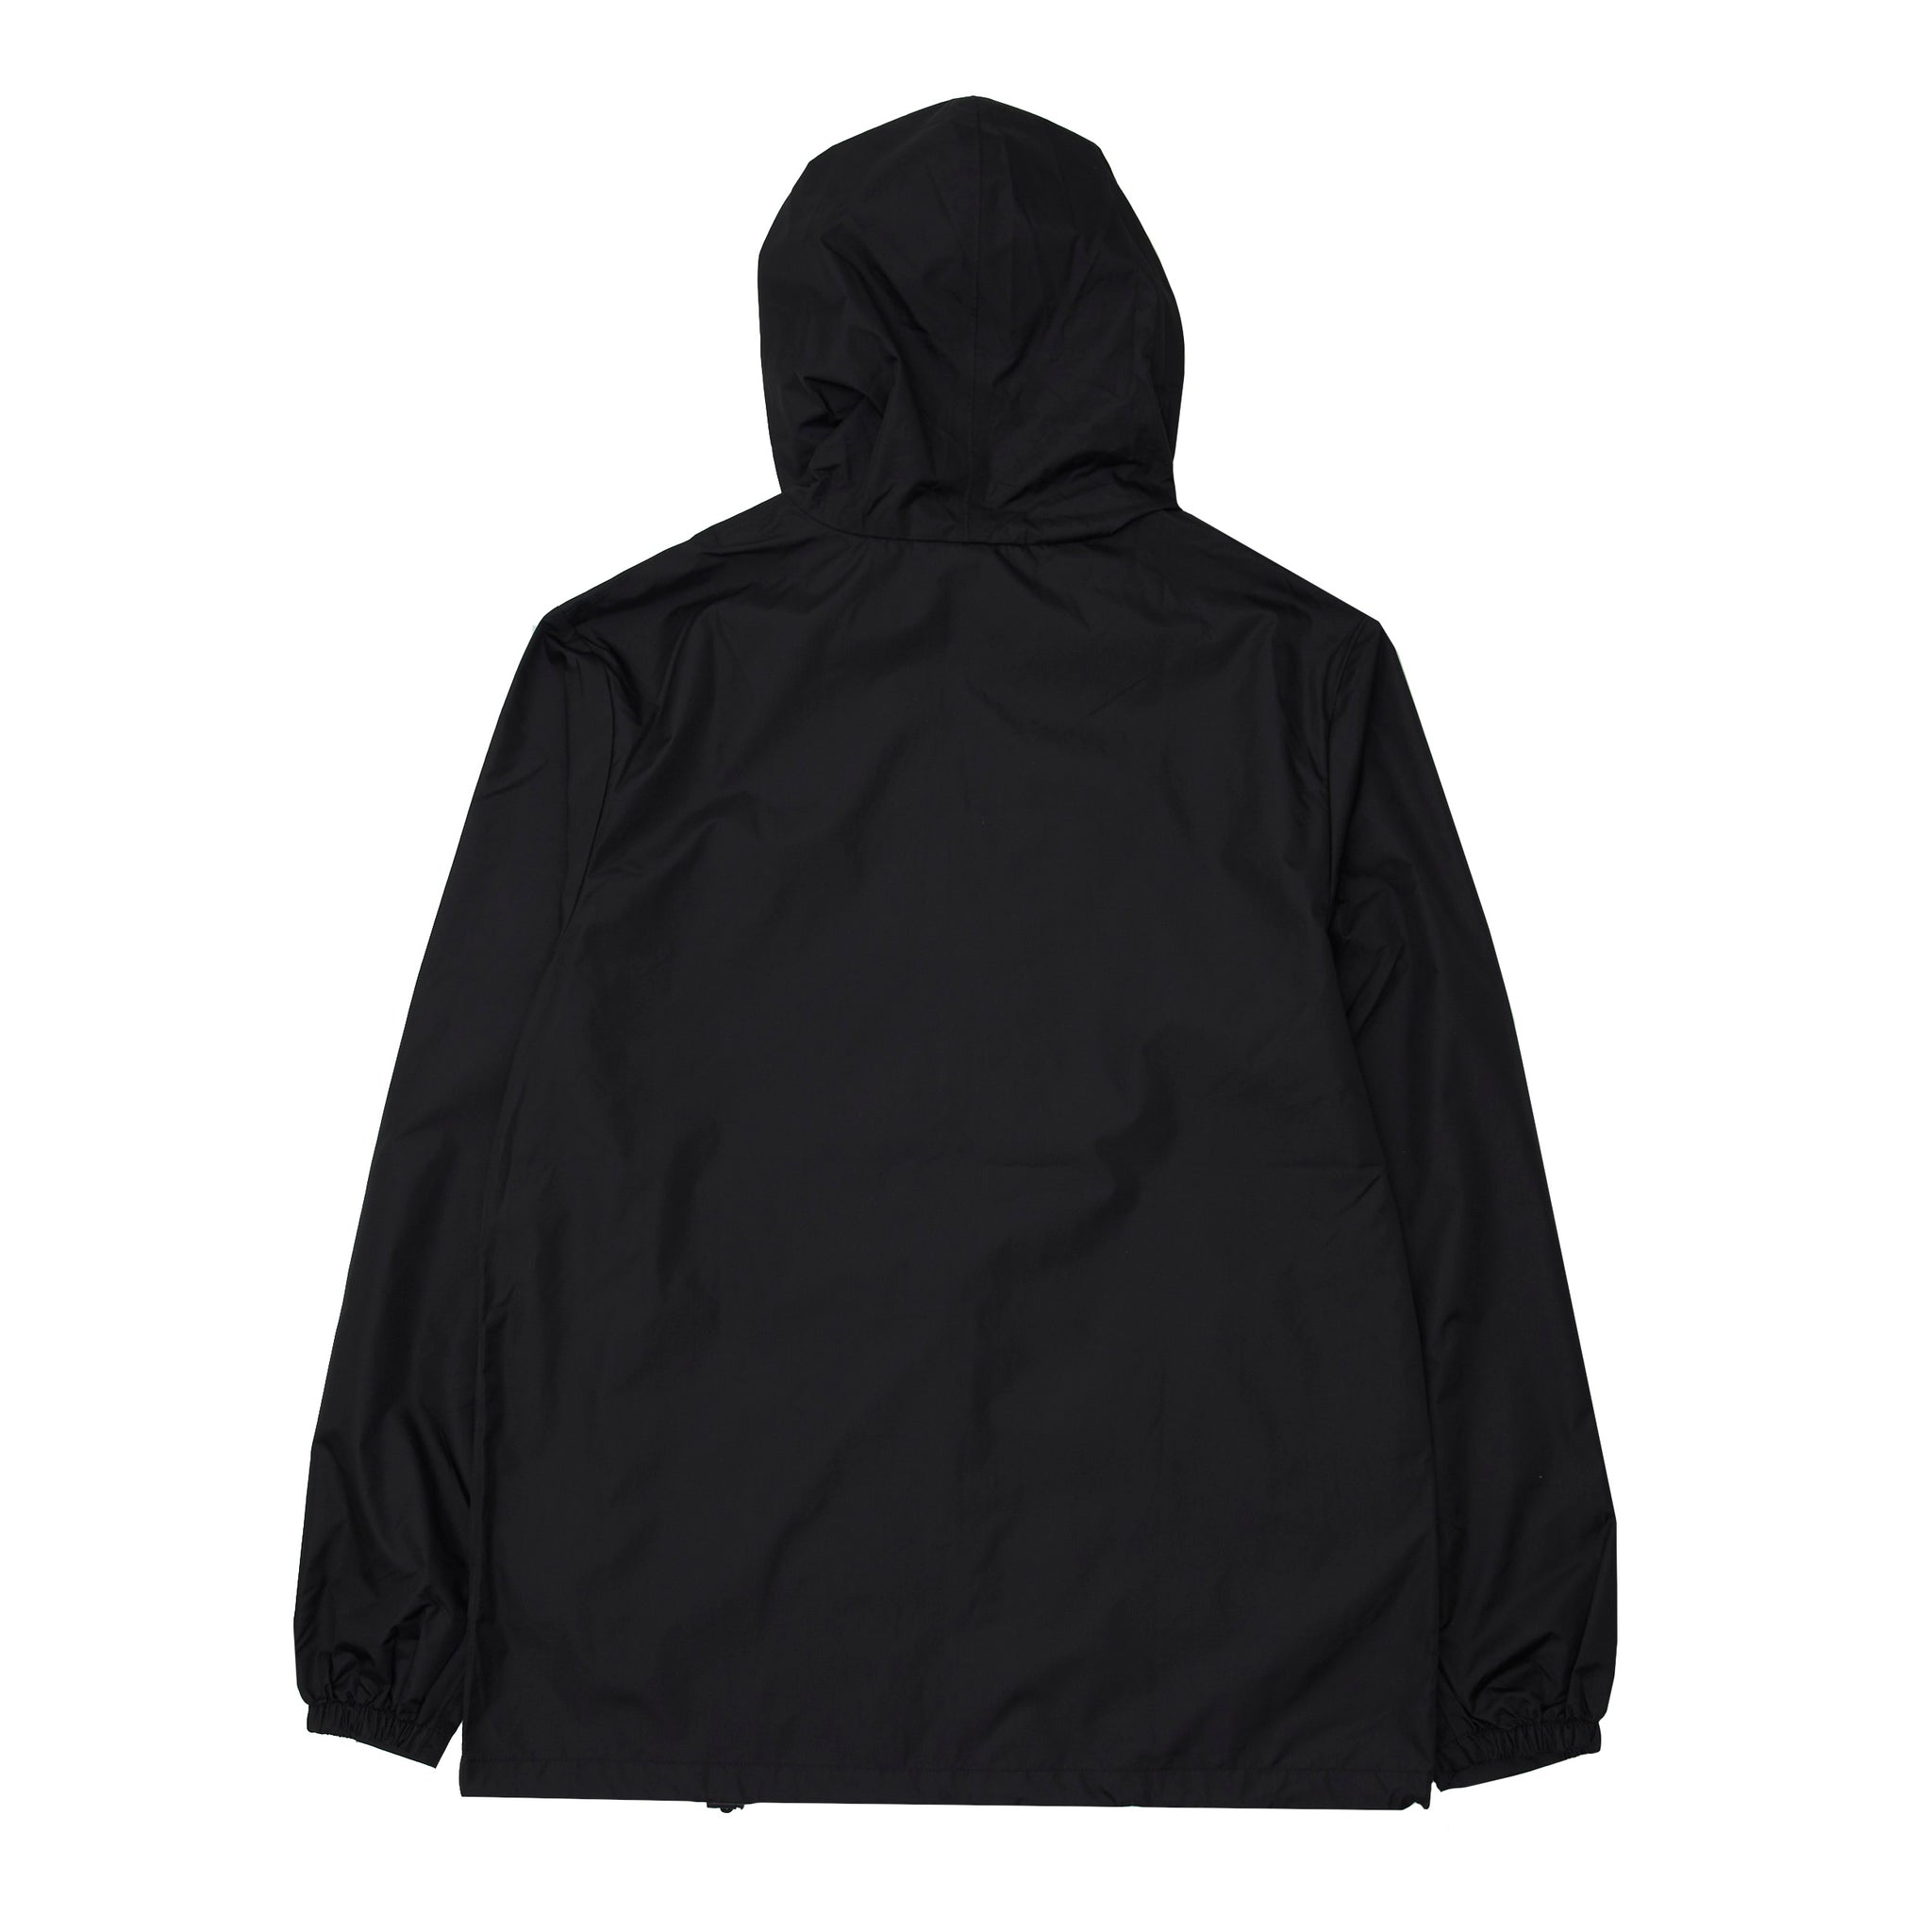 Global Zip Jacket - Black